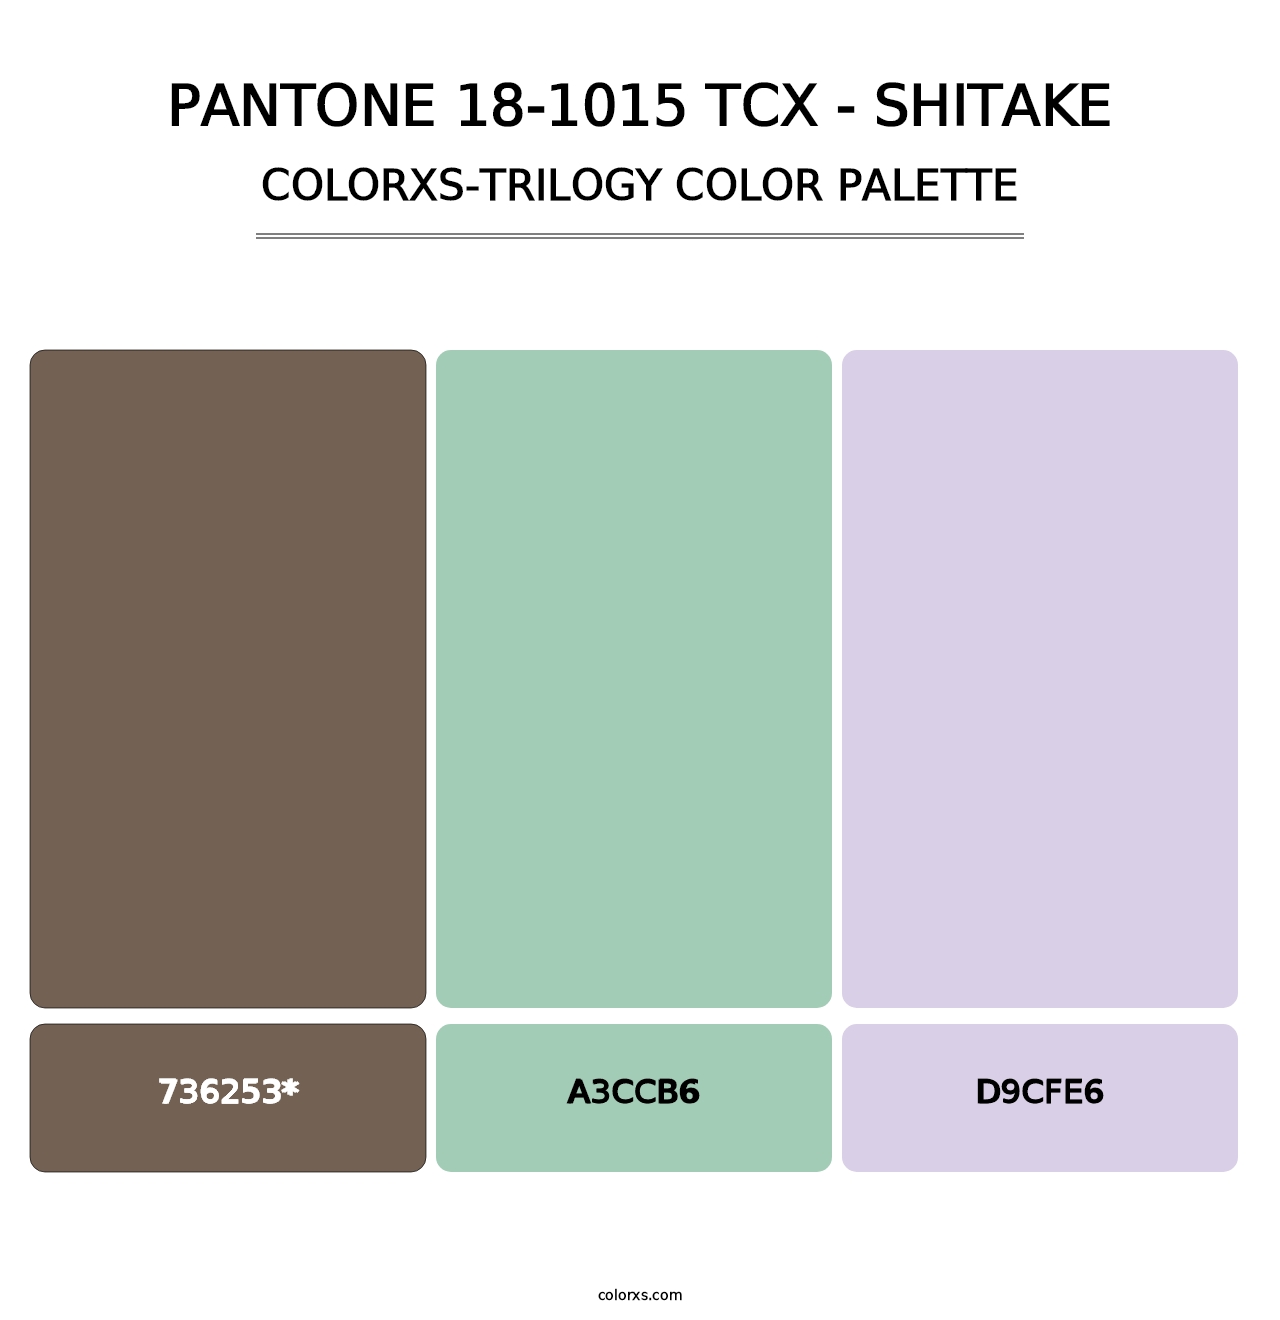 PANTONE 18-1015 TCX - Shitake - Colorxs Trilogy Palette